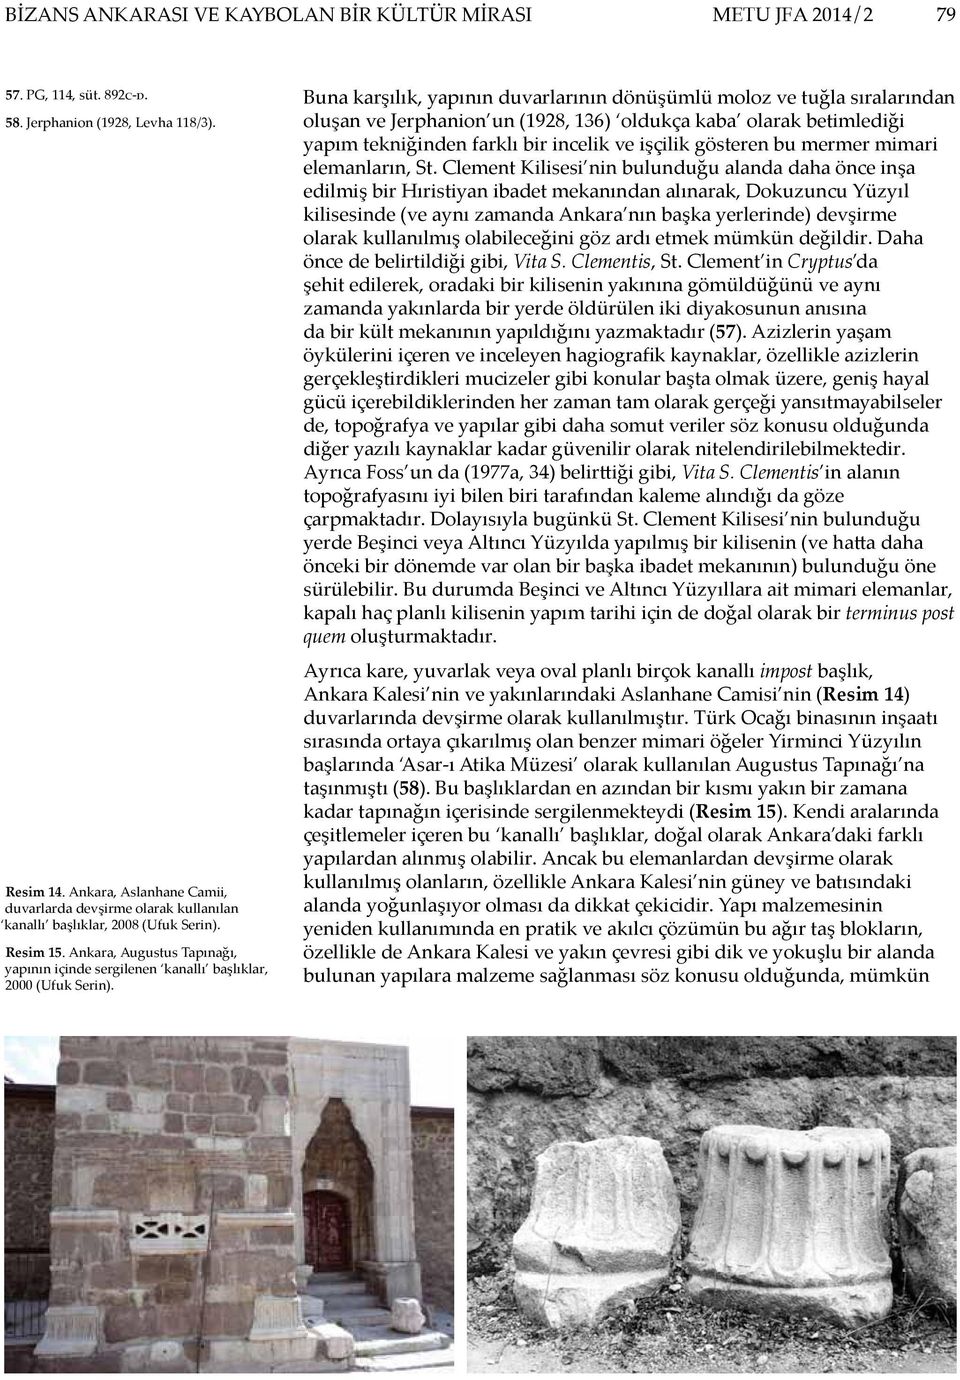 Ankara, Augustus Tapınağı, yapının içinde sergilenen kanallı başlıklar, 2000 (Ufuk Serin).